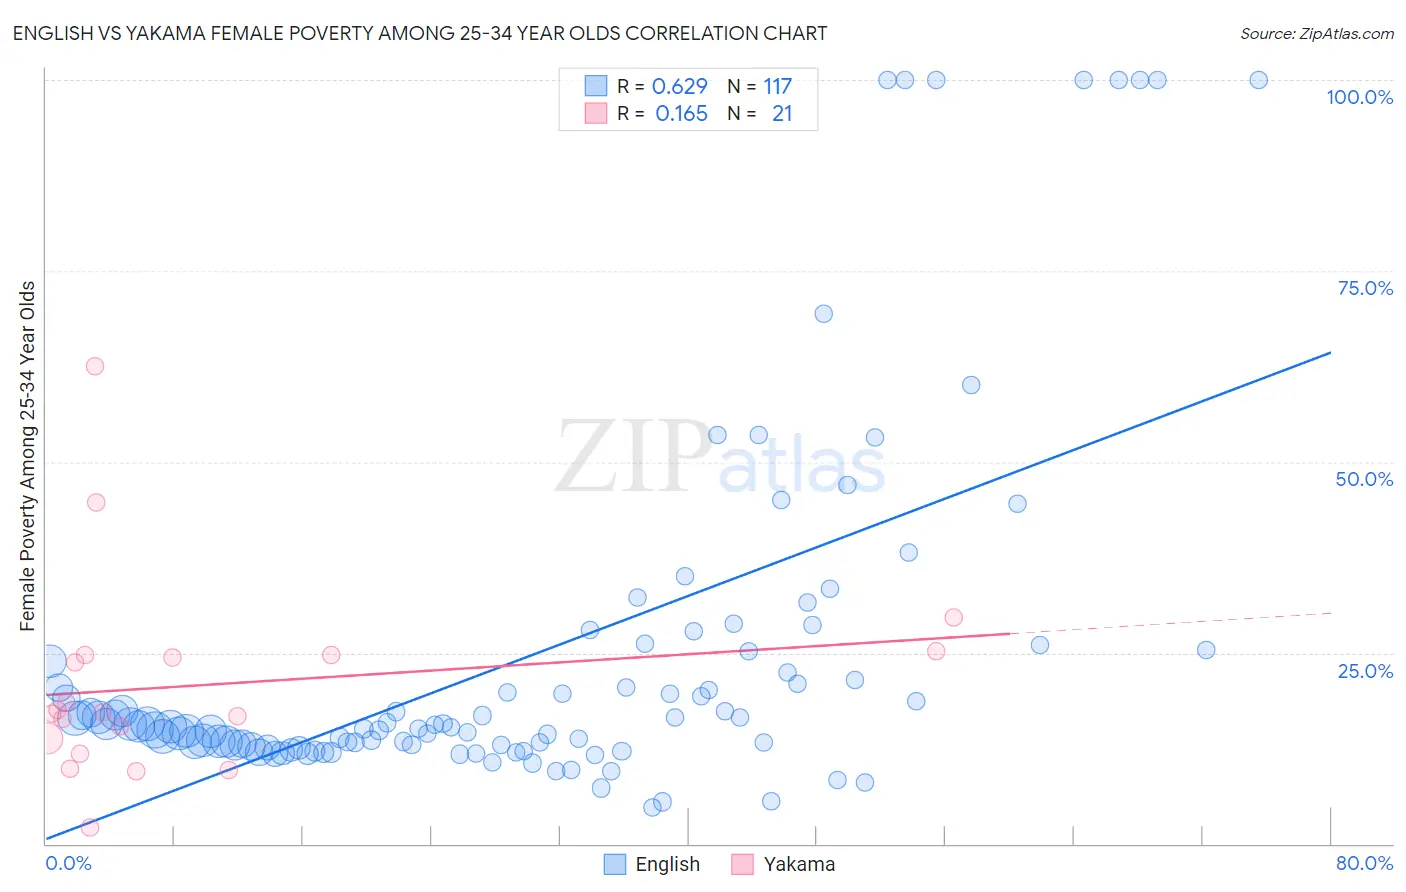 English vs Yakama Female Poverty Among 25-34 Year Olds